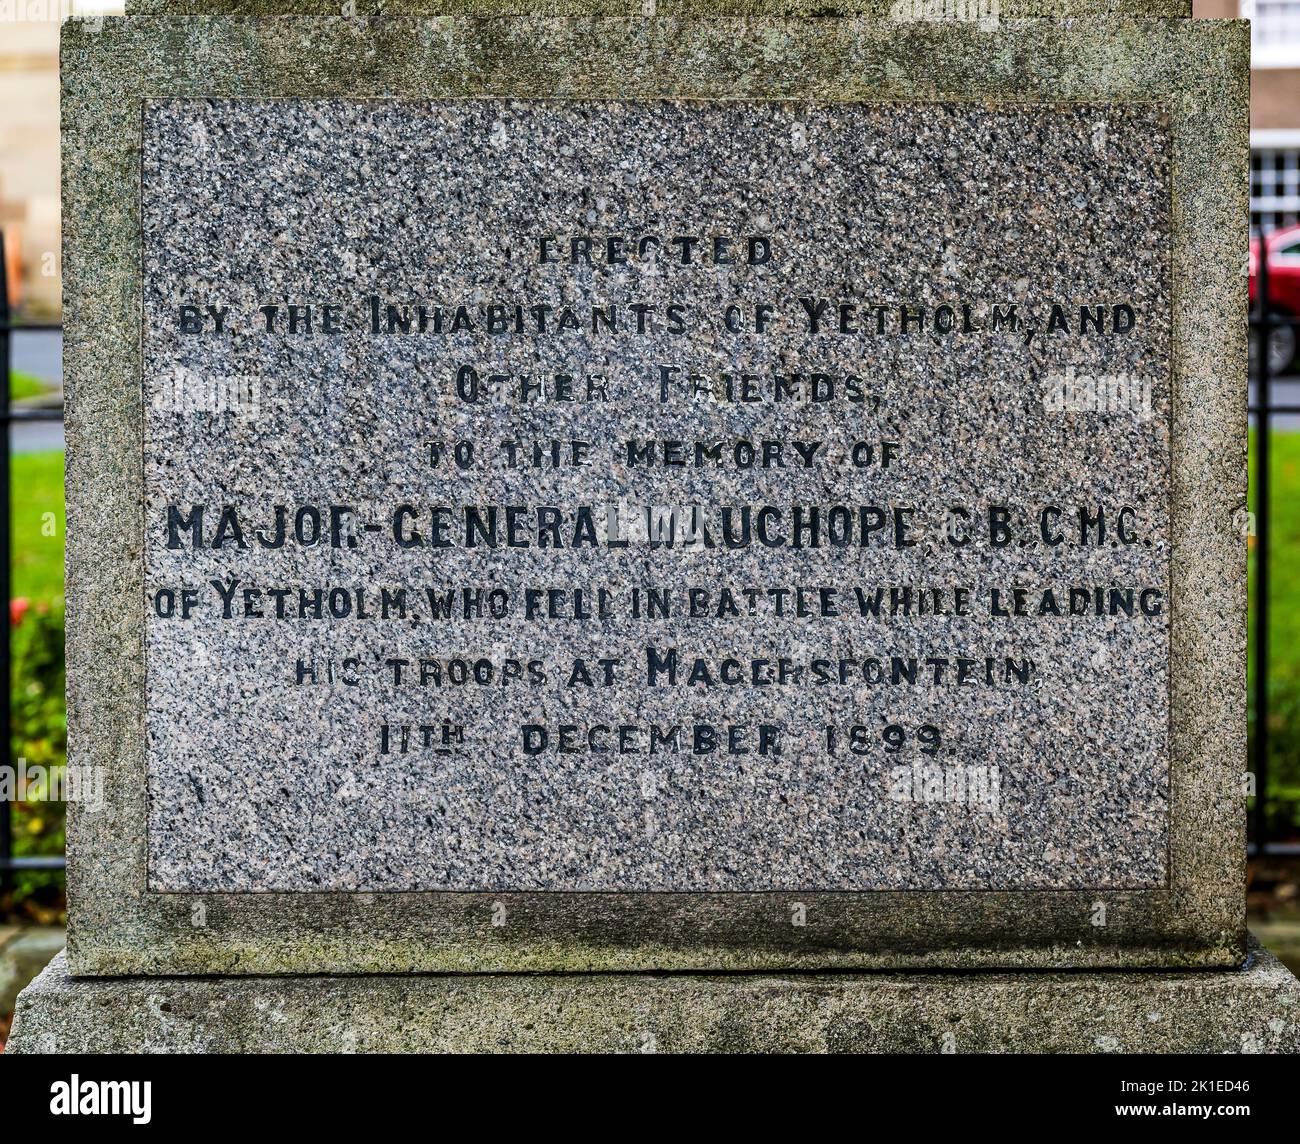 Ciudad de Yeholm, Scottish Borders, Reino Unido - un monumento al Mayor General Wauchope, muerto mientras lideraba a los hombres durante la Guerra de los Boer el 11 de diciembre de 1899 Foto de stock